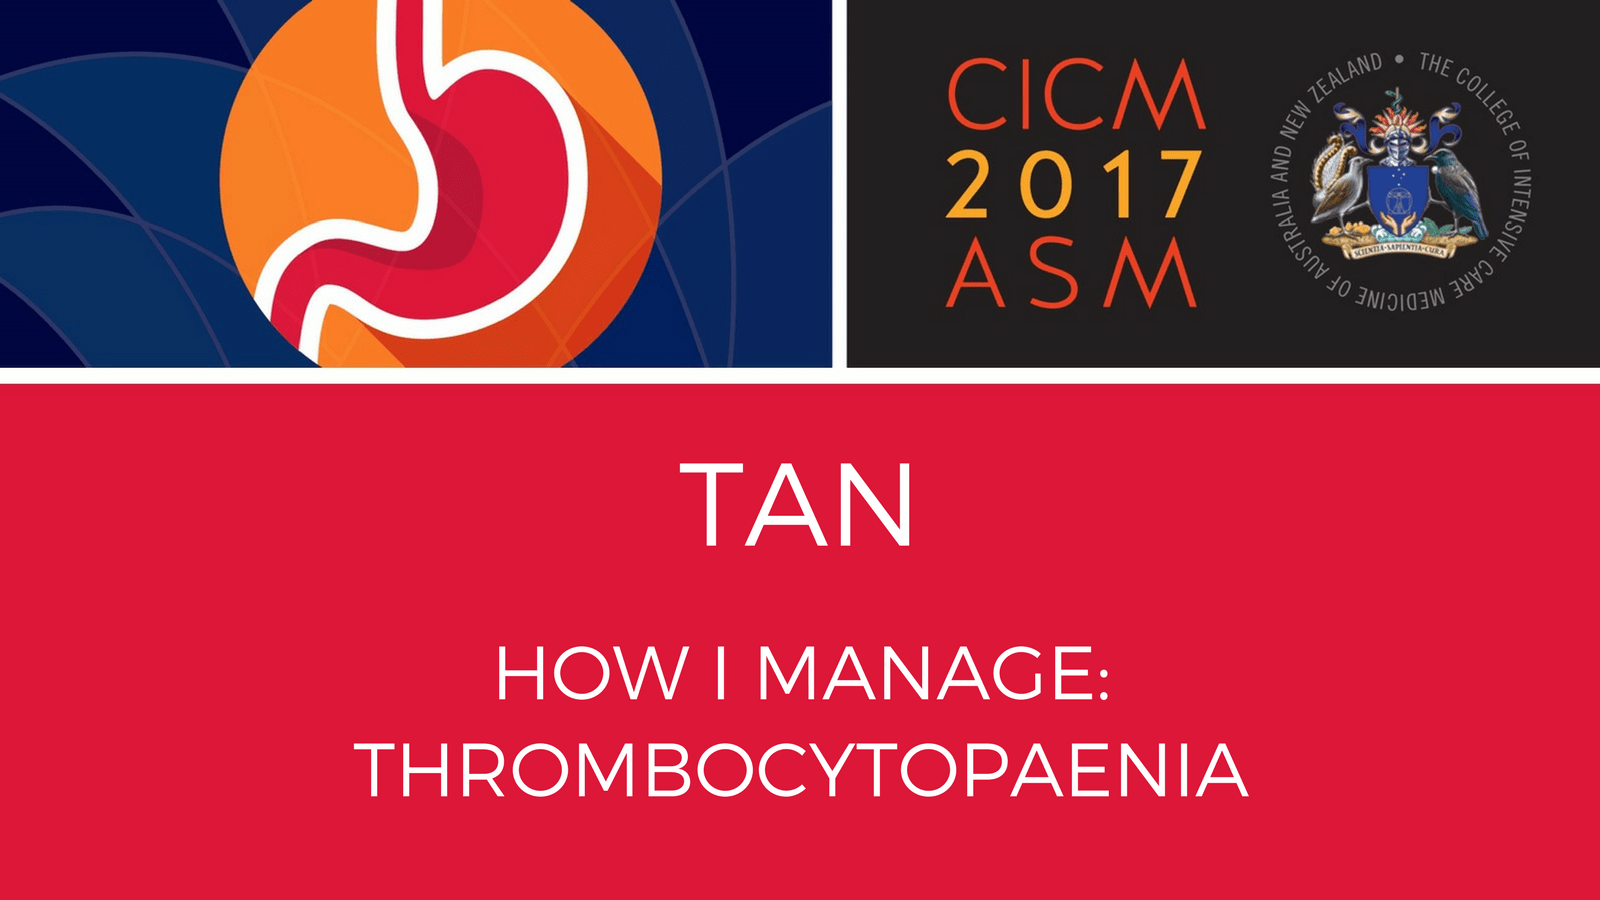 How I manage: Thrombocytopaenia.